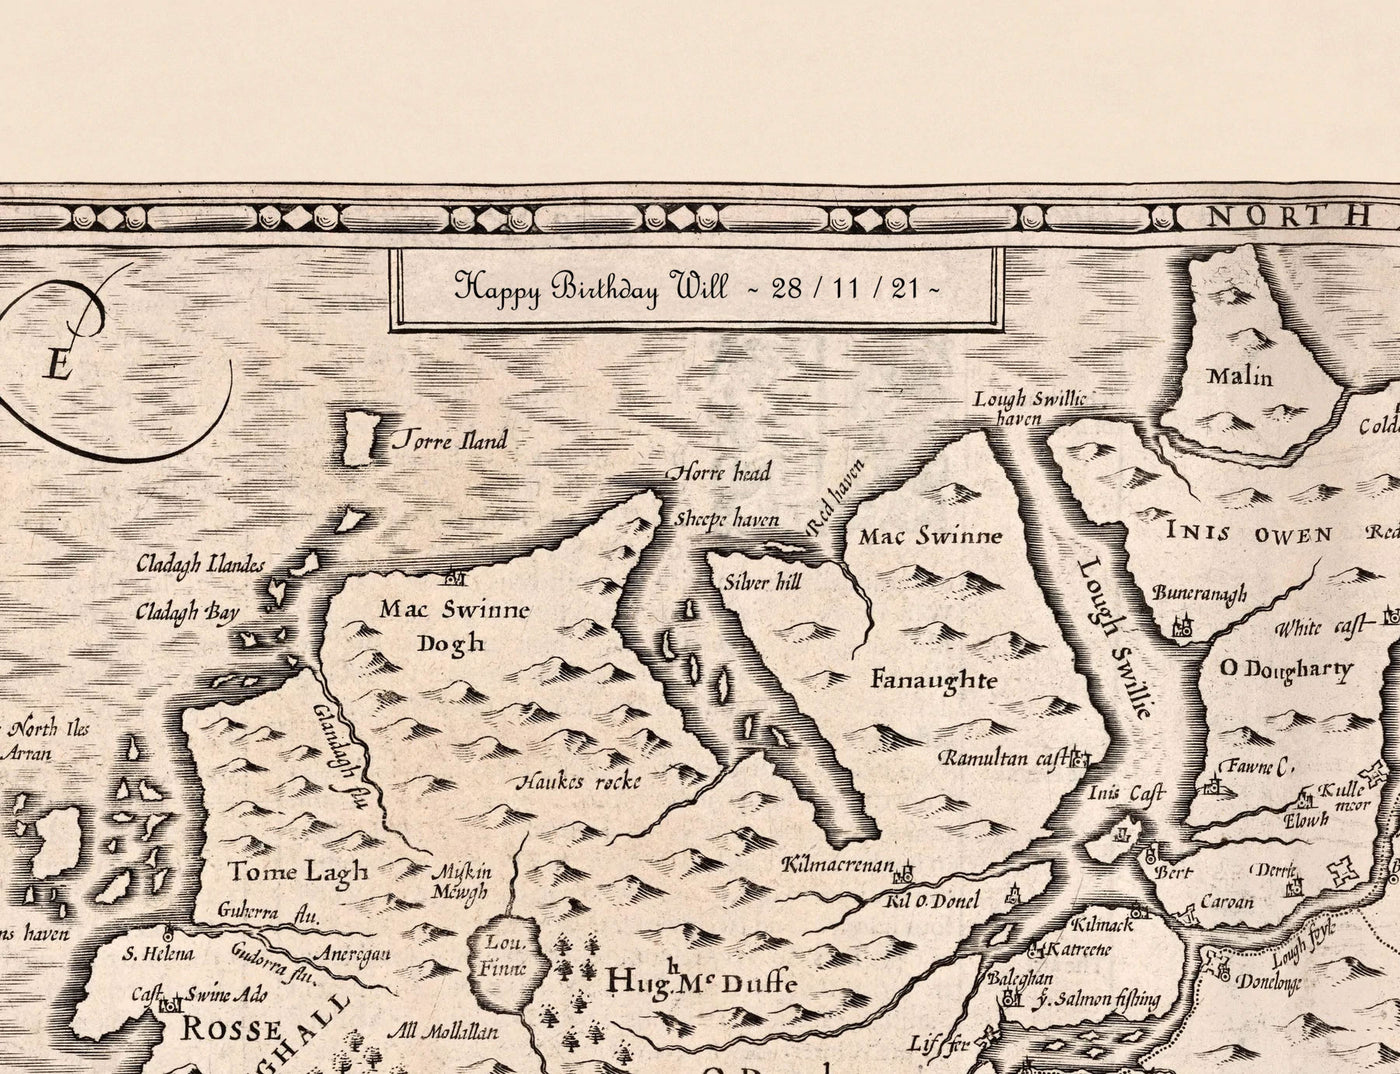 Alte Karte von London St. Giles im Jahr 1720 von John Strype und John Stow - Great Russell Street, Lincoln's Inn Fields, High Holborn, Drury Lane